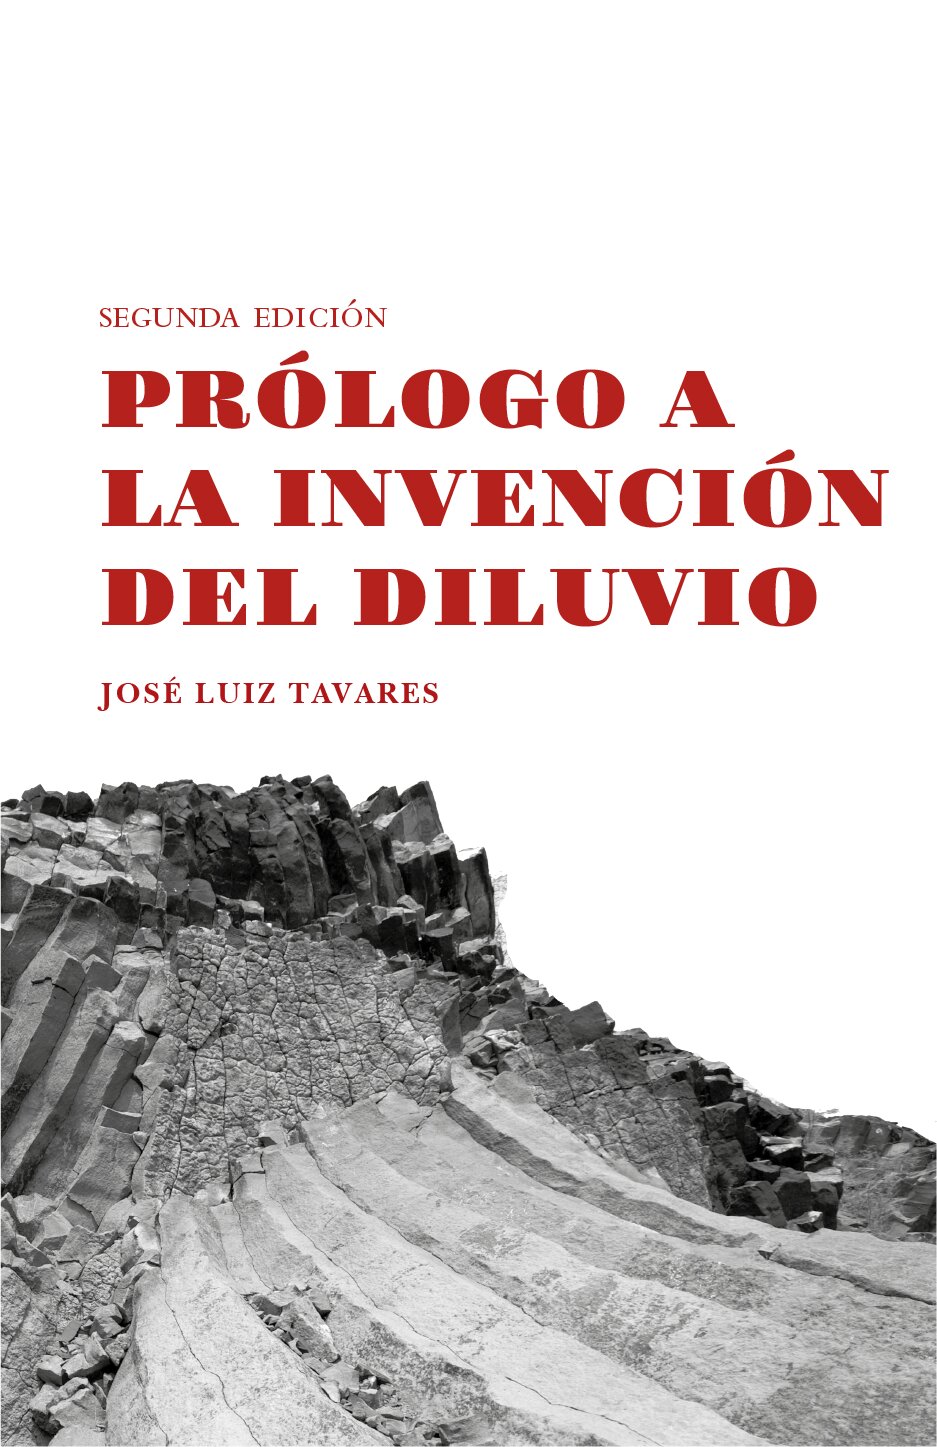 Prólogo a la invención del diluvio, de Jose Luiz Tavares